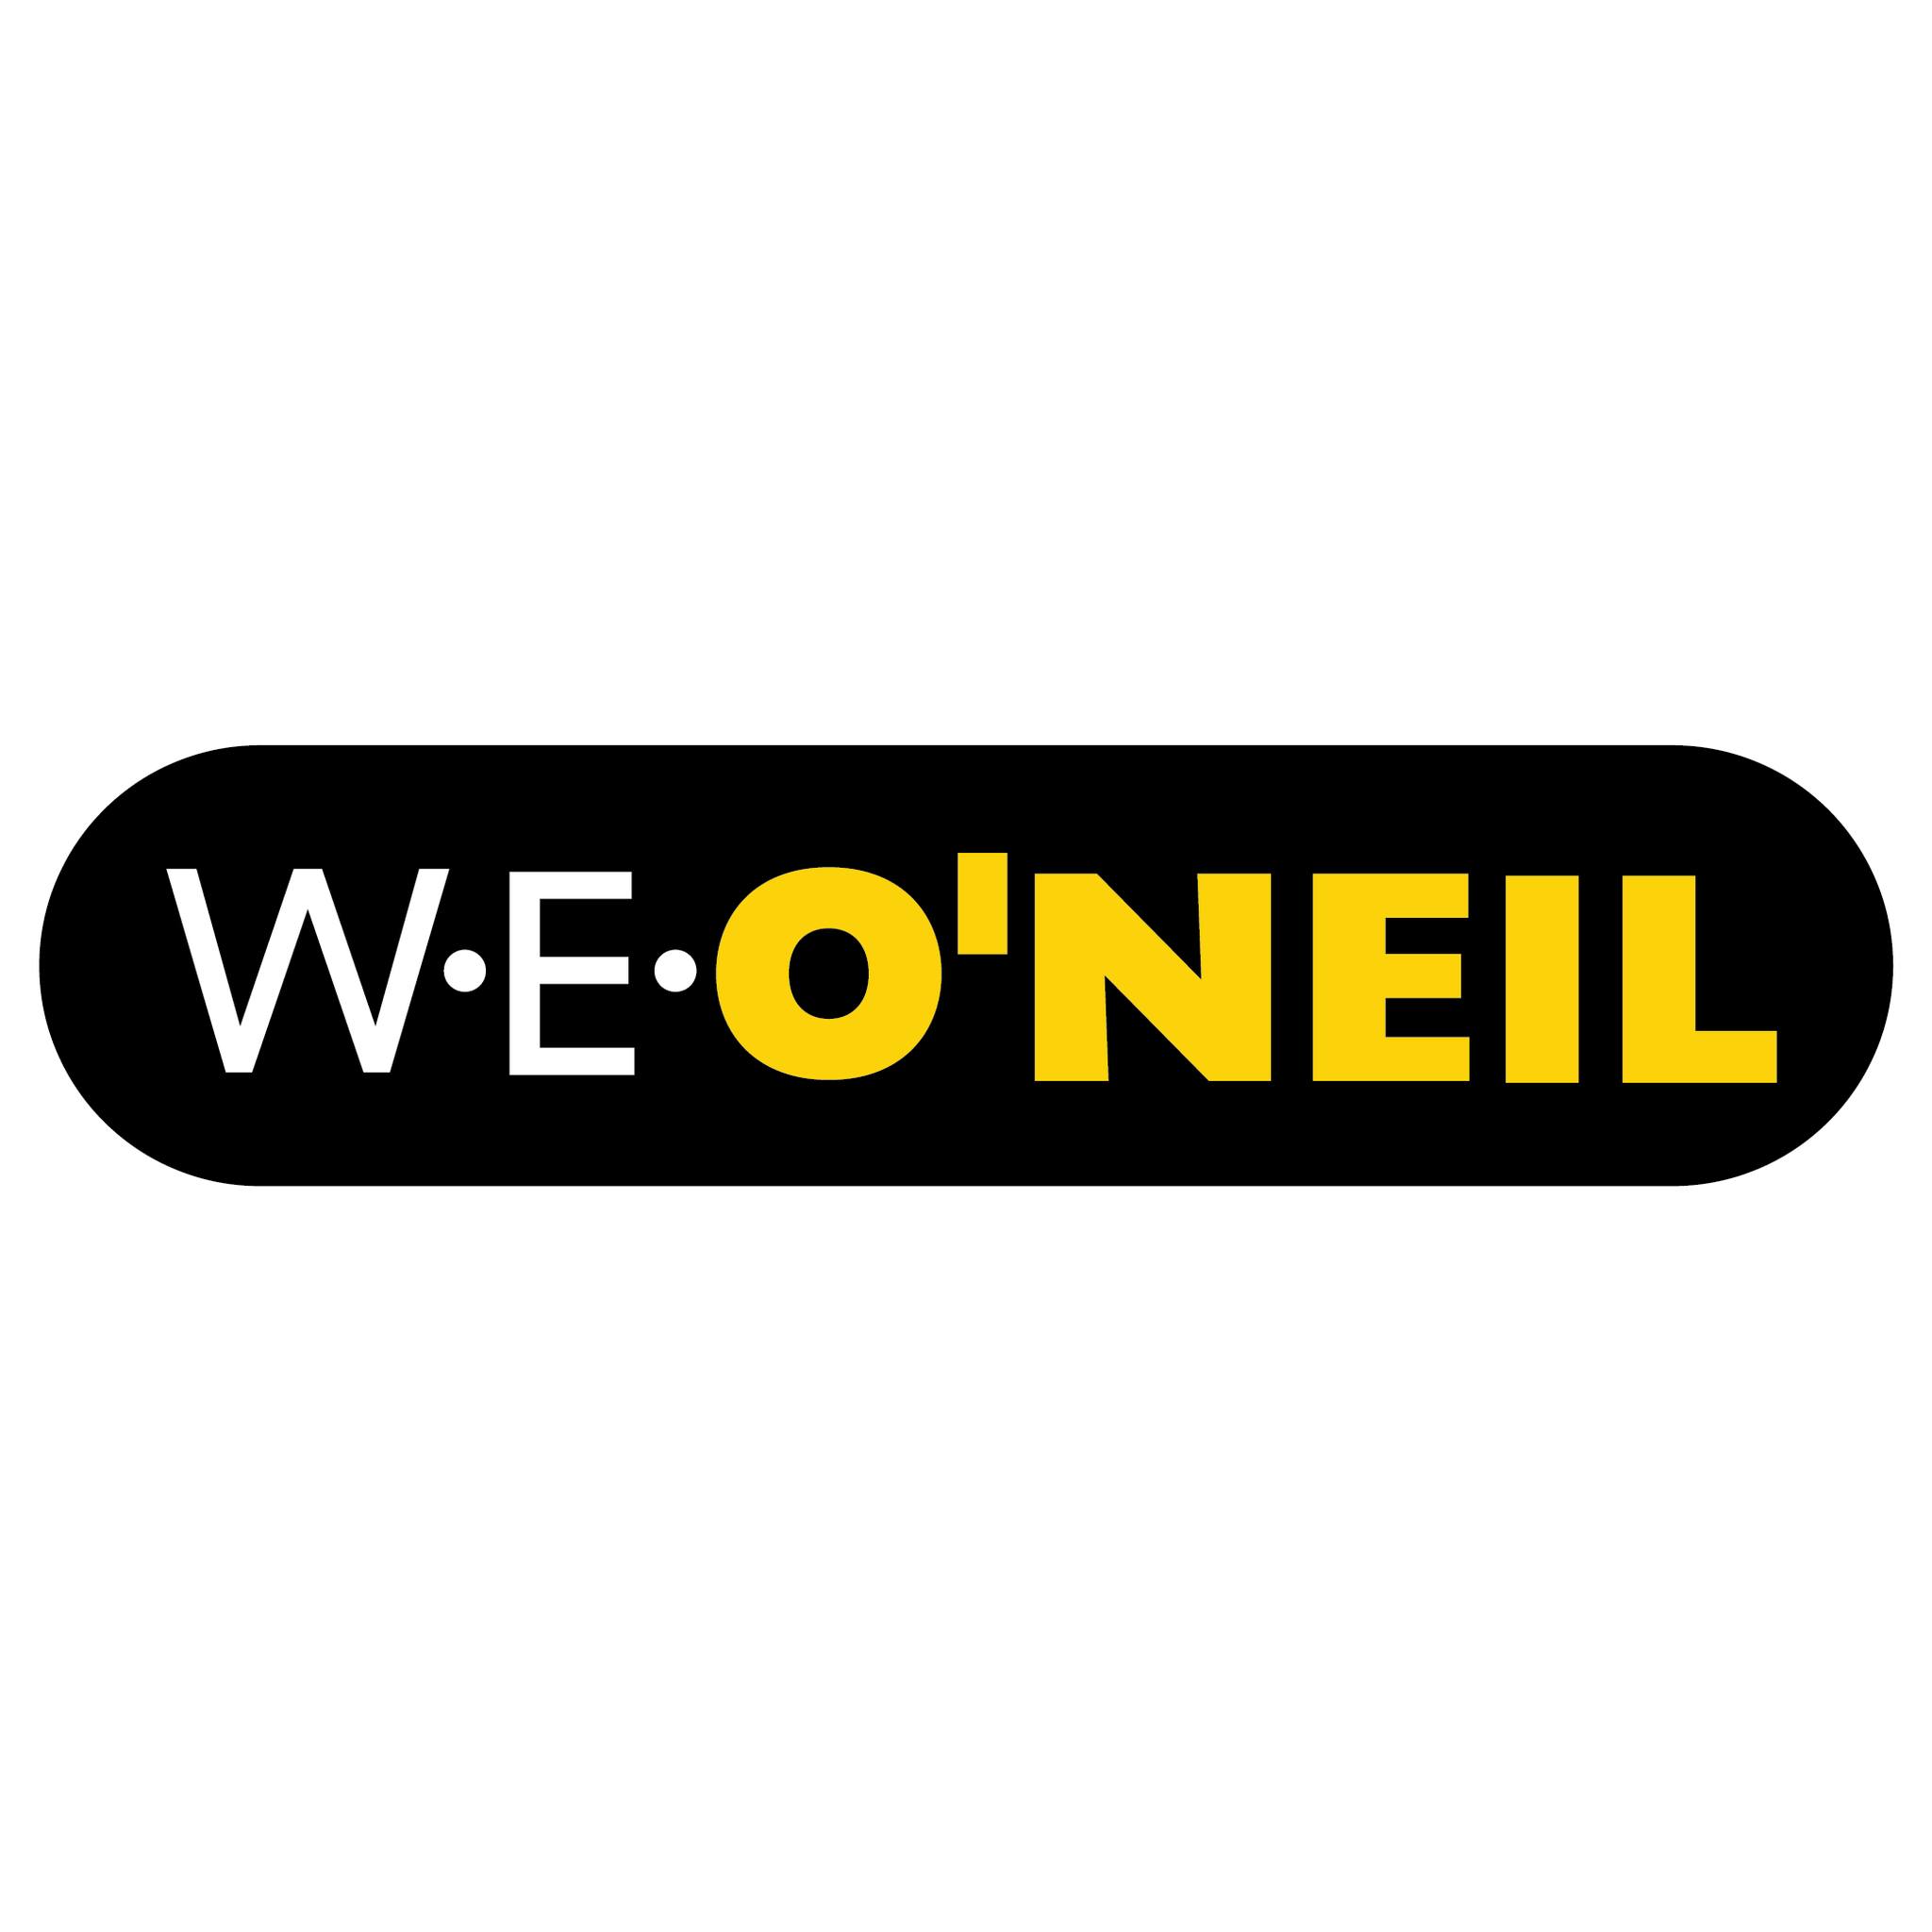 W.E. O'Neil Construction